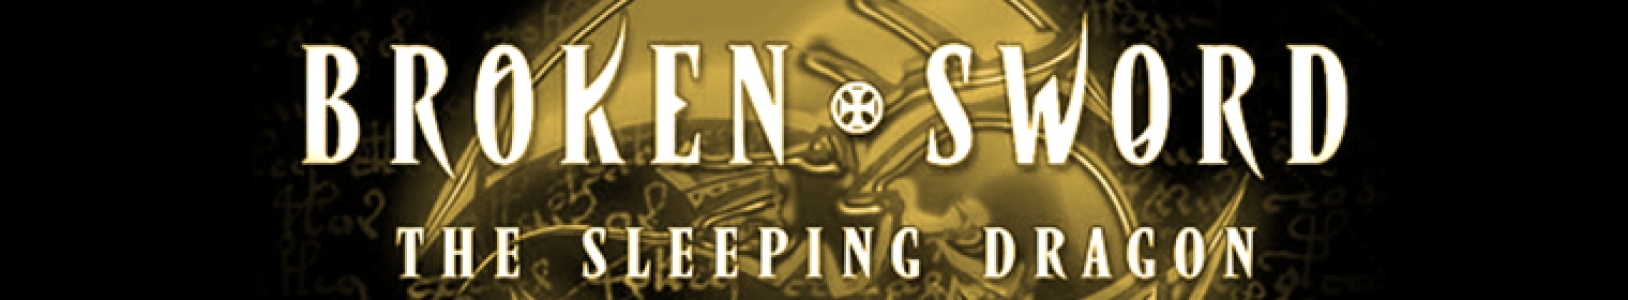 Broken Sword 3: The Sleeping Dragon banner